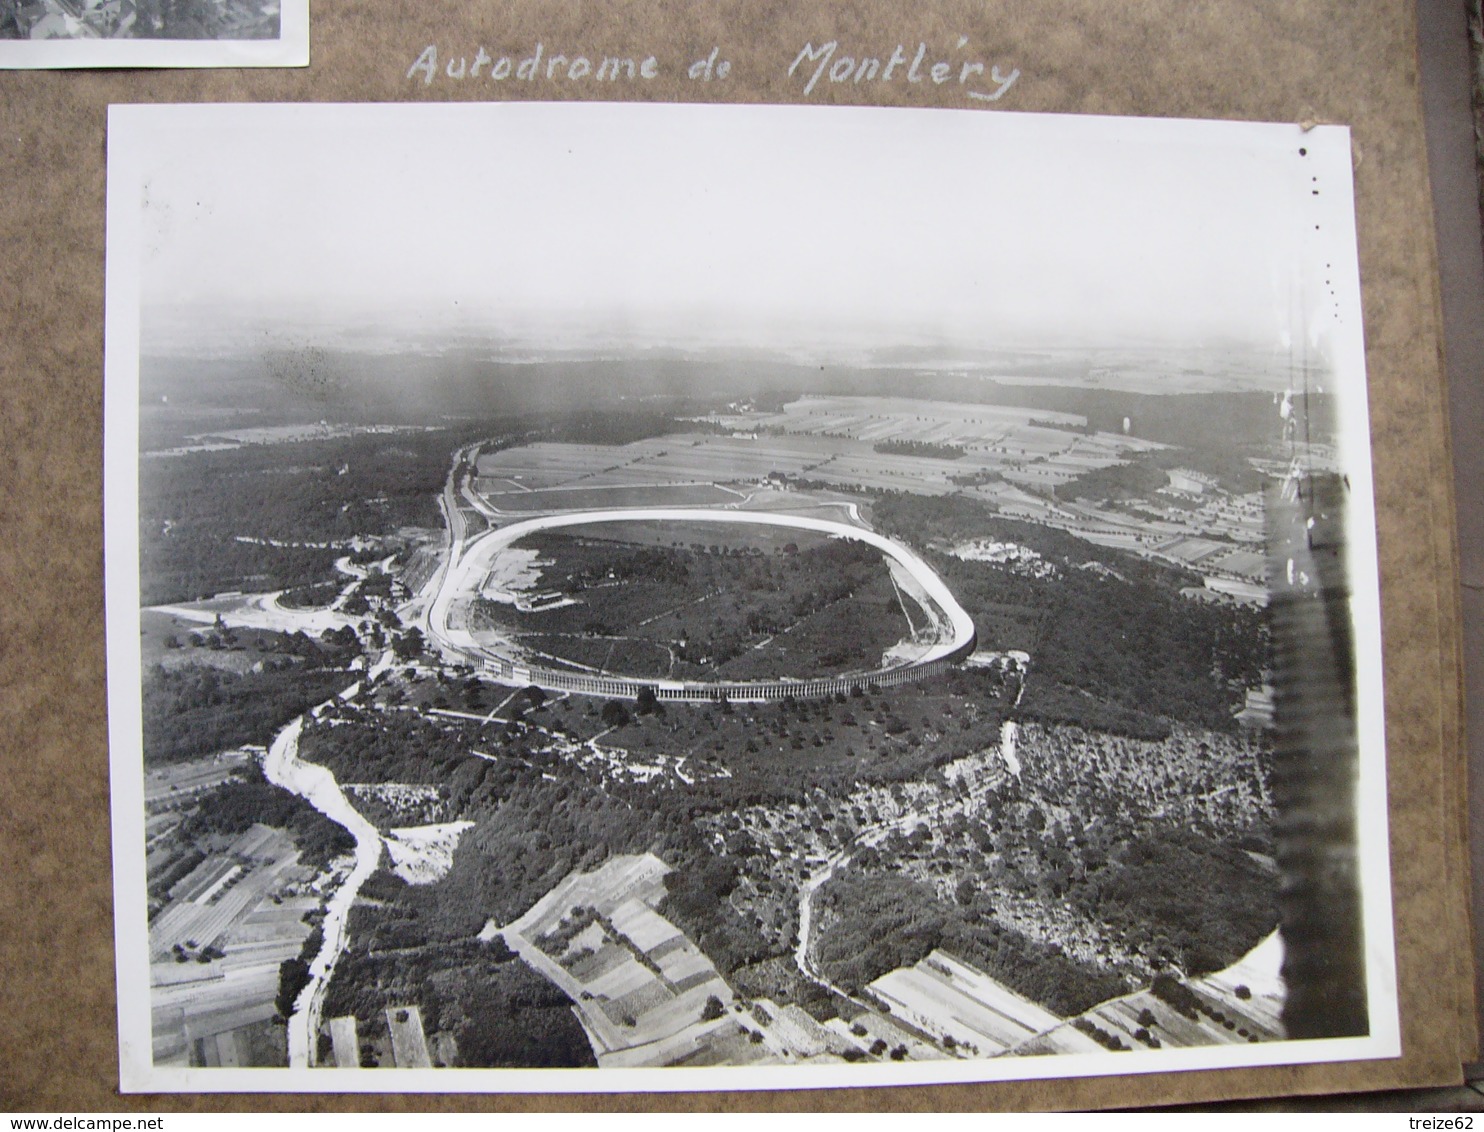 Album d'un aviateur 76 photos aériennes années 30 Paris éboulement Lyon Marseille autodrome Montléry bagne île de Ré +++